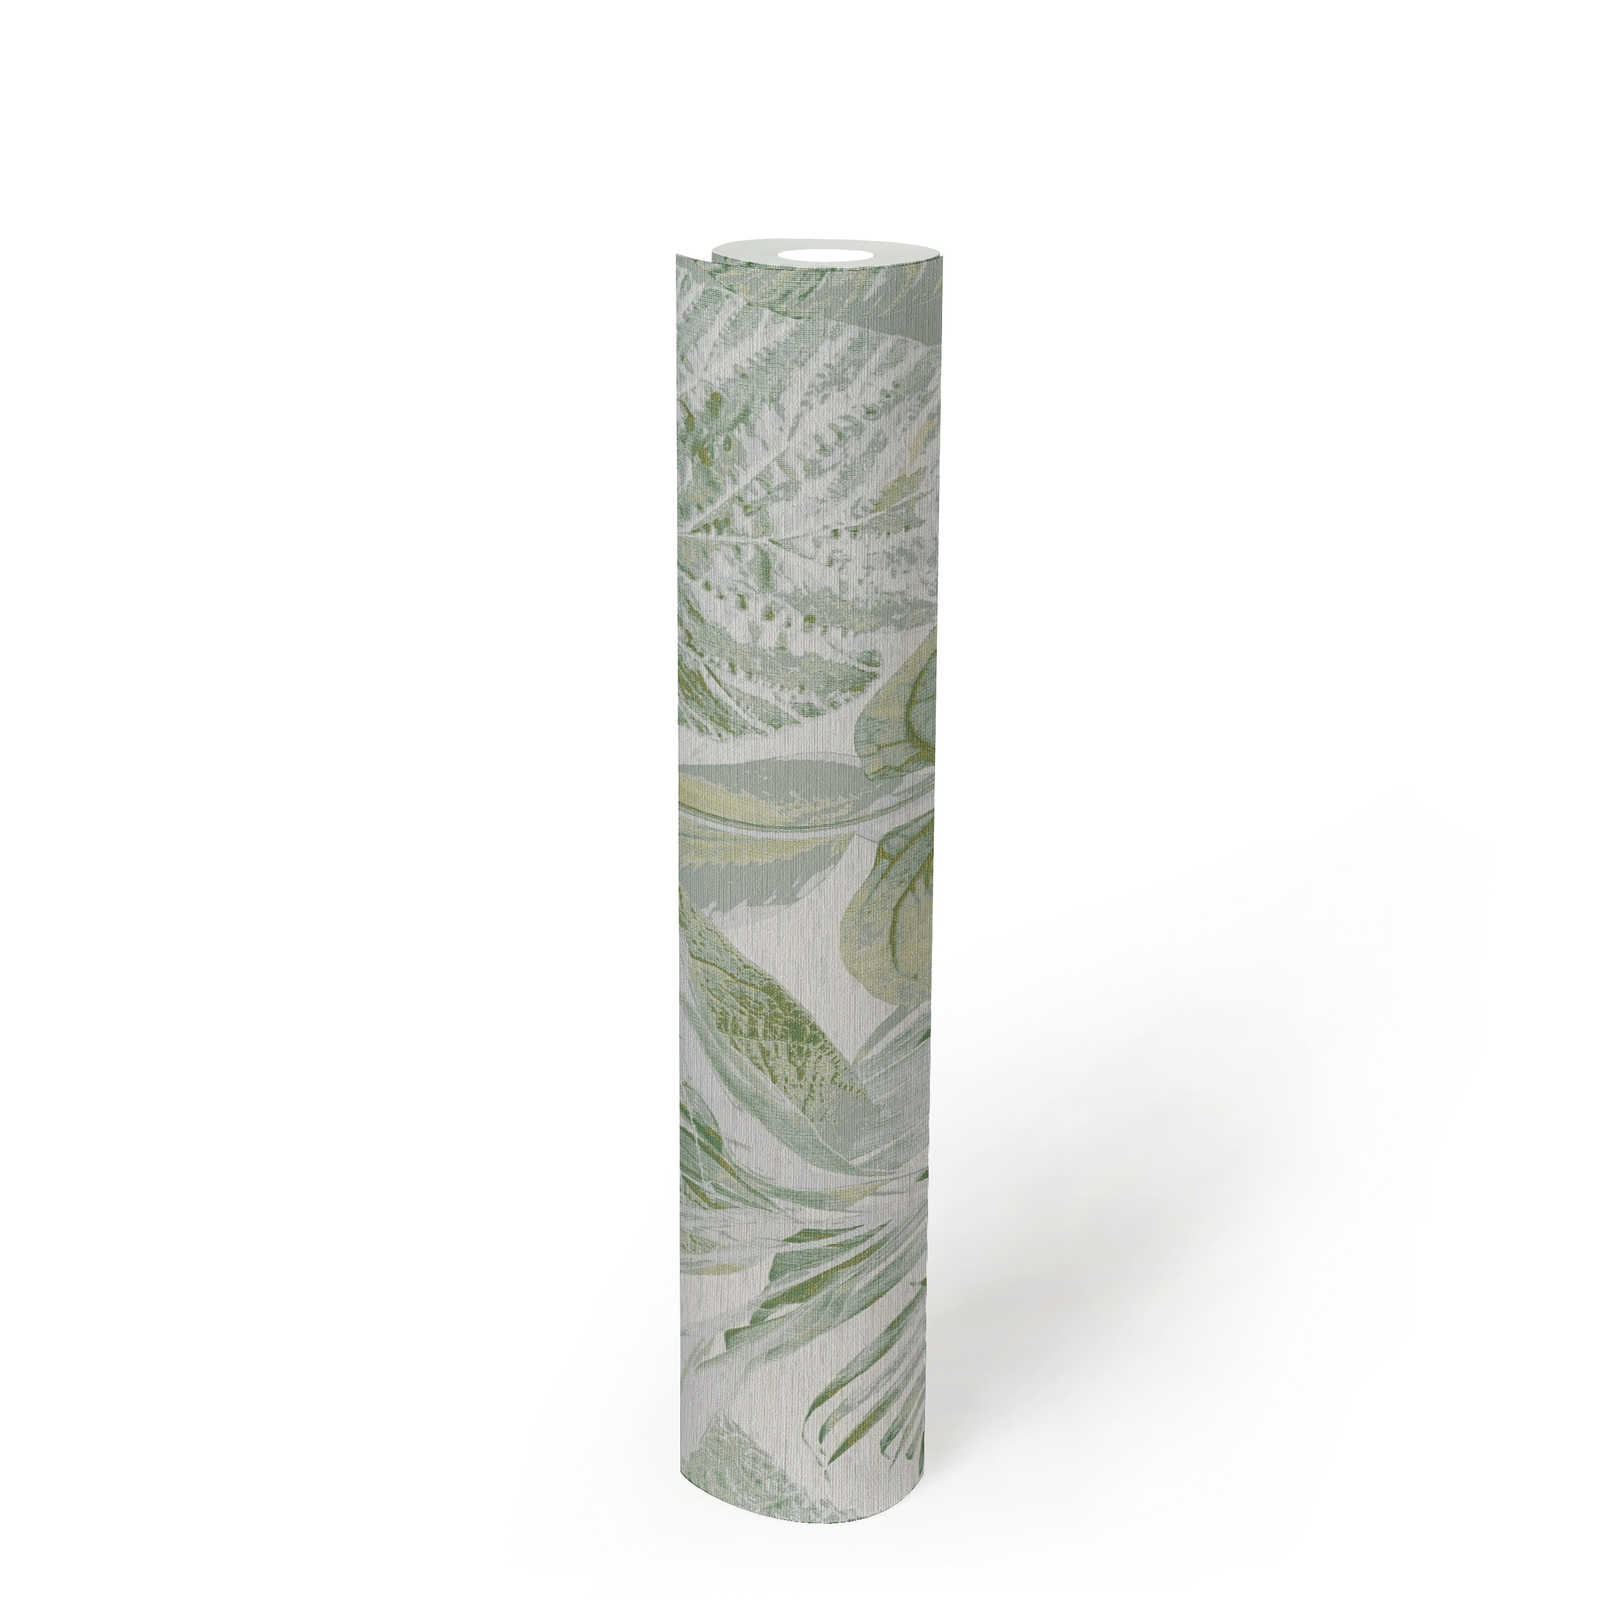             Papel pintado con motivos de hojas y selva brillo claro - verde, blanco, gris
        